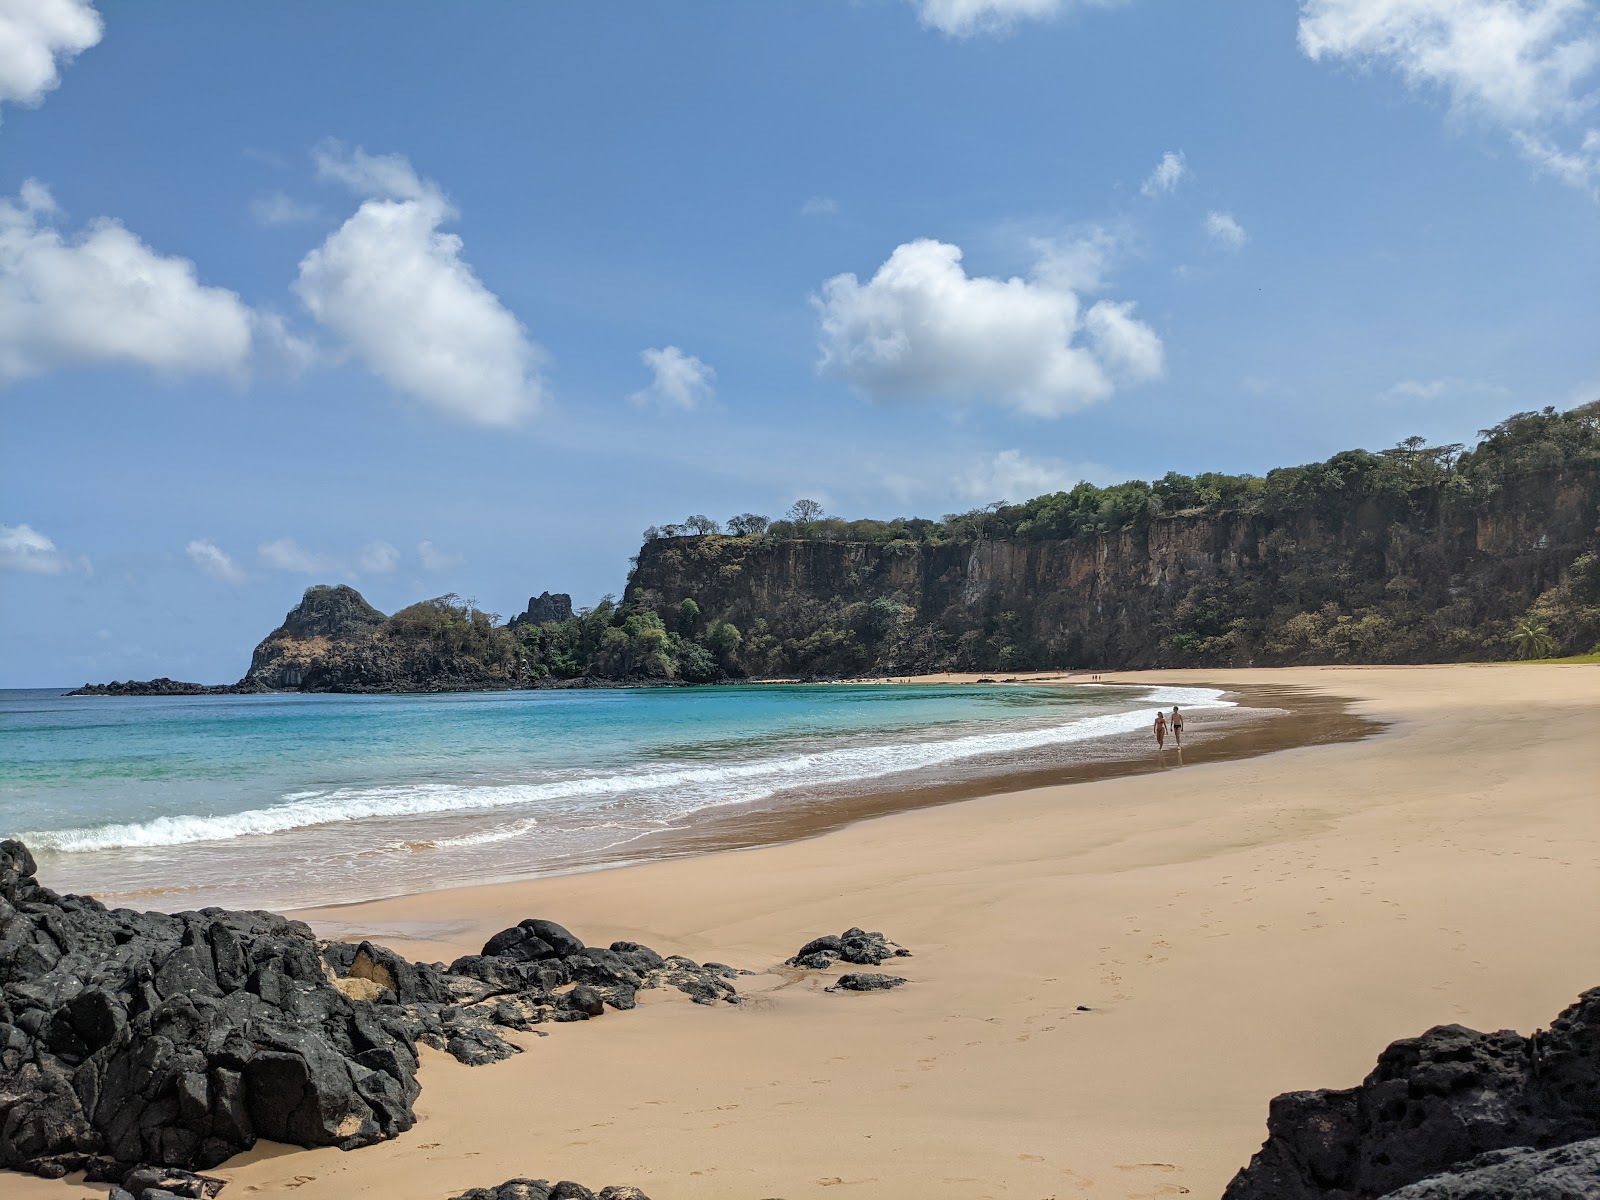 Foto di Spiaggia di Sancho ubicato in zona naturale